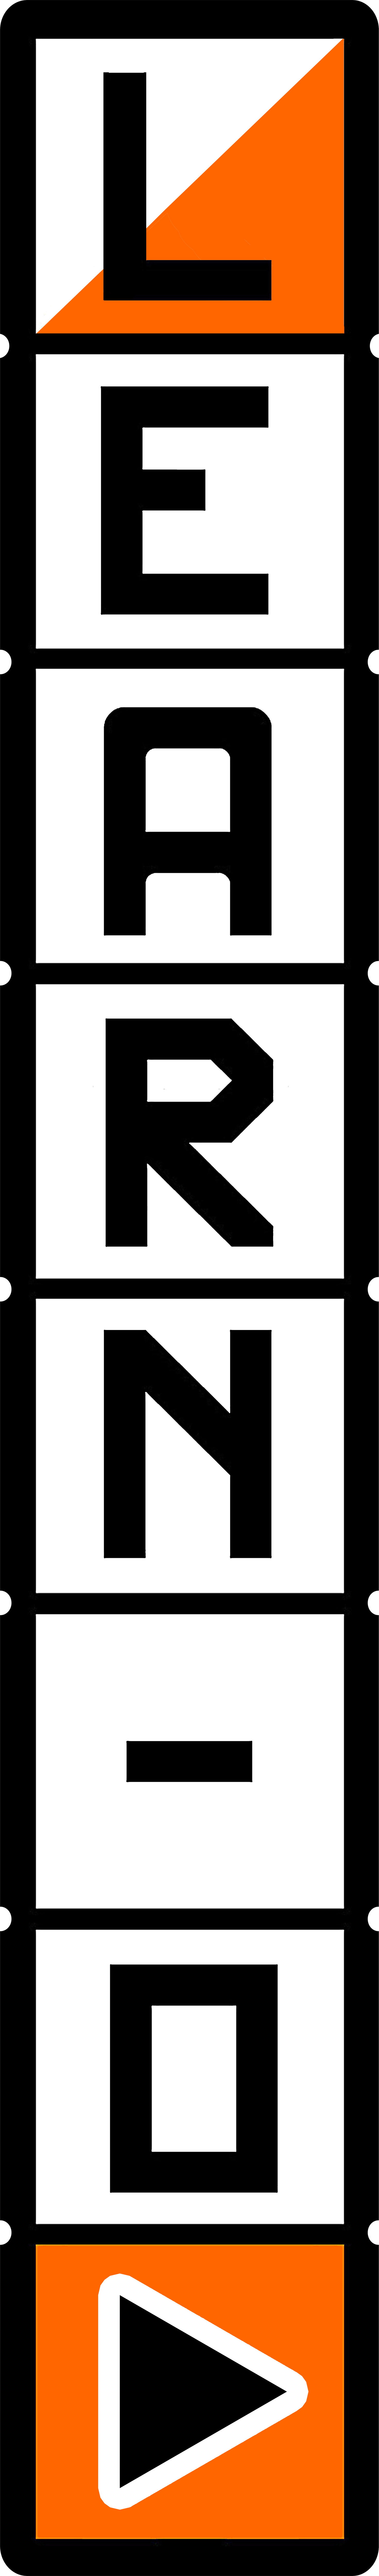 Learn-O logo visuel vertical, département de l'Ain, système pédagogique ludique